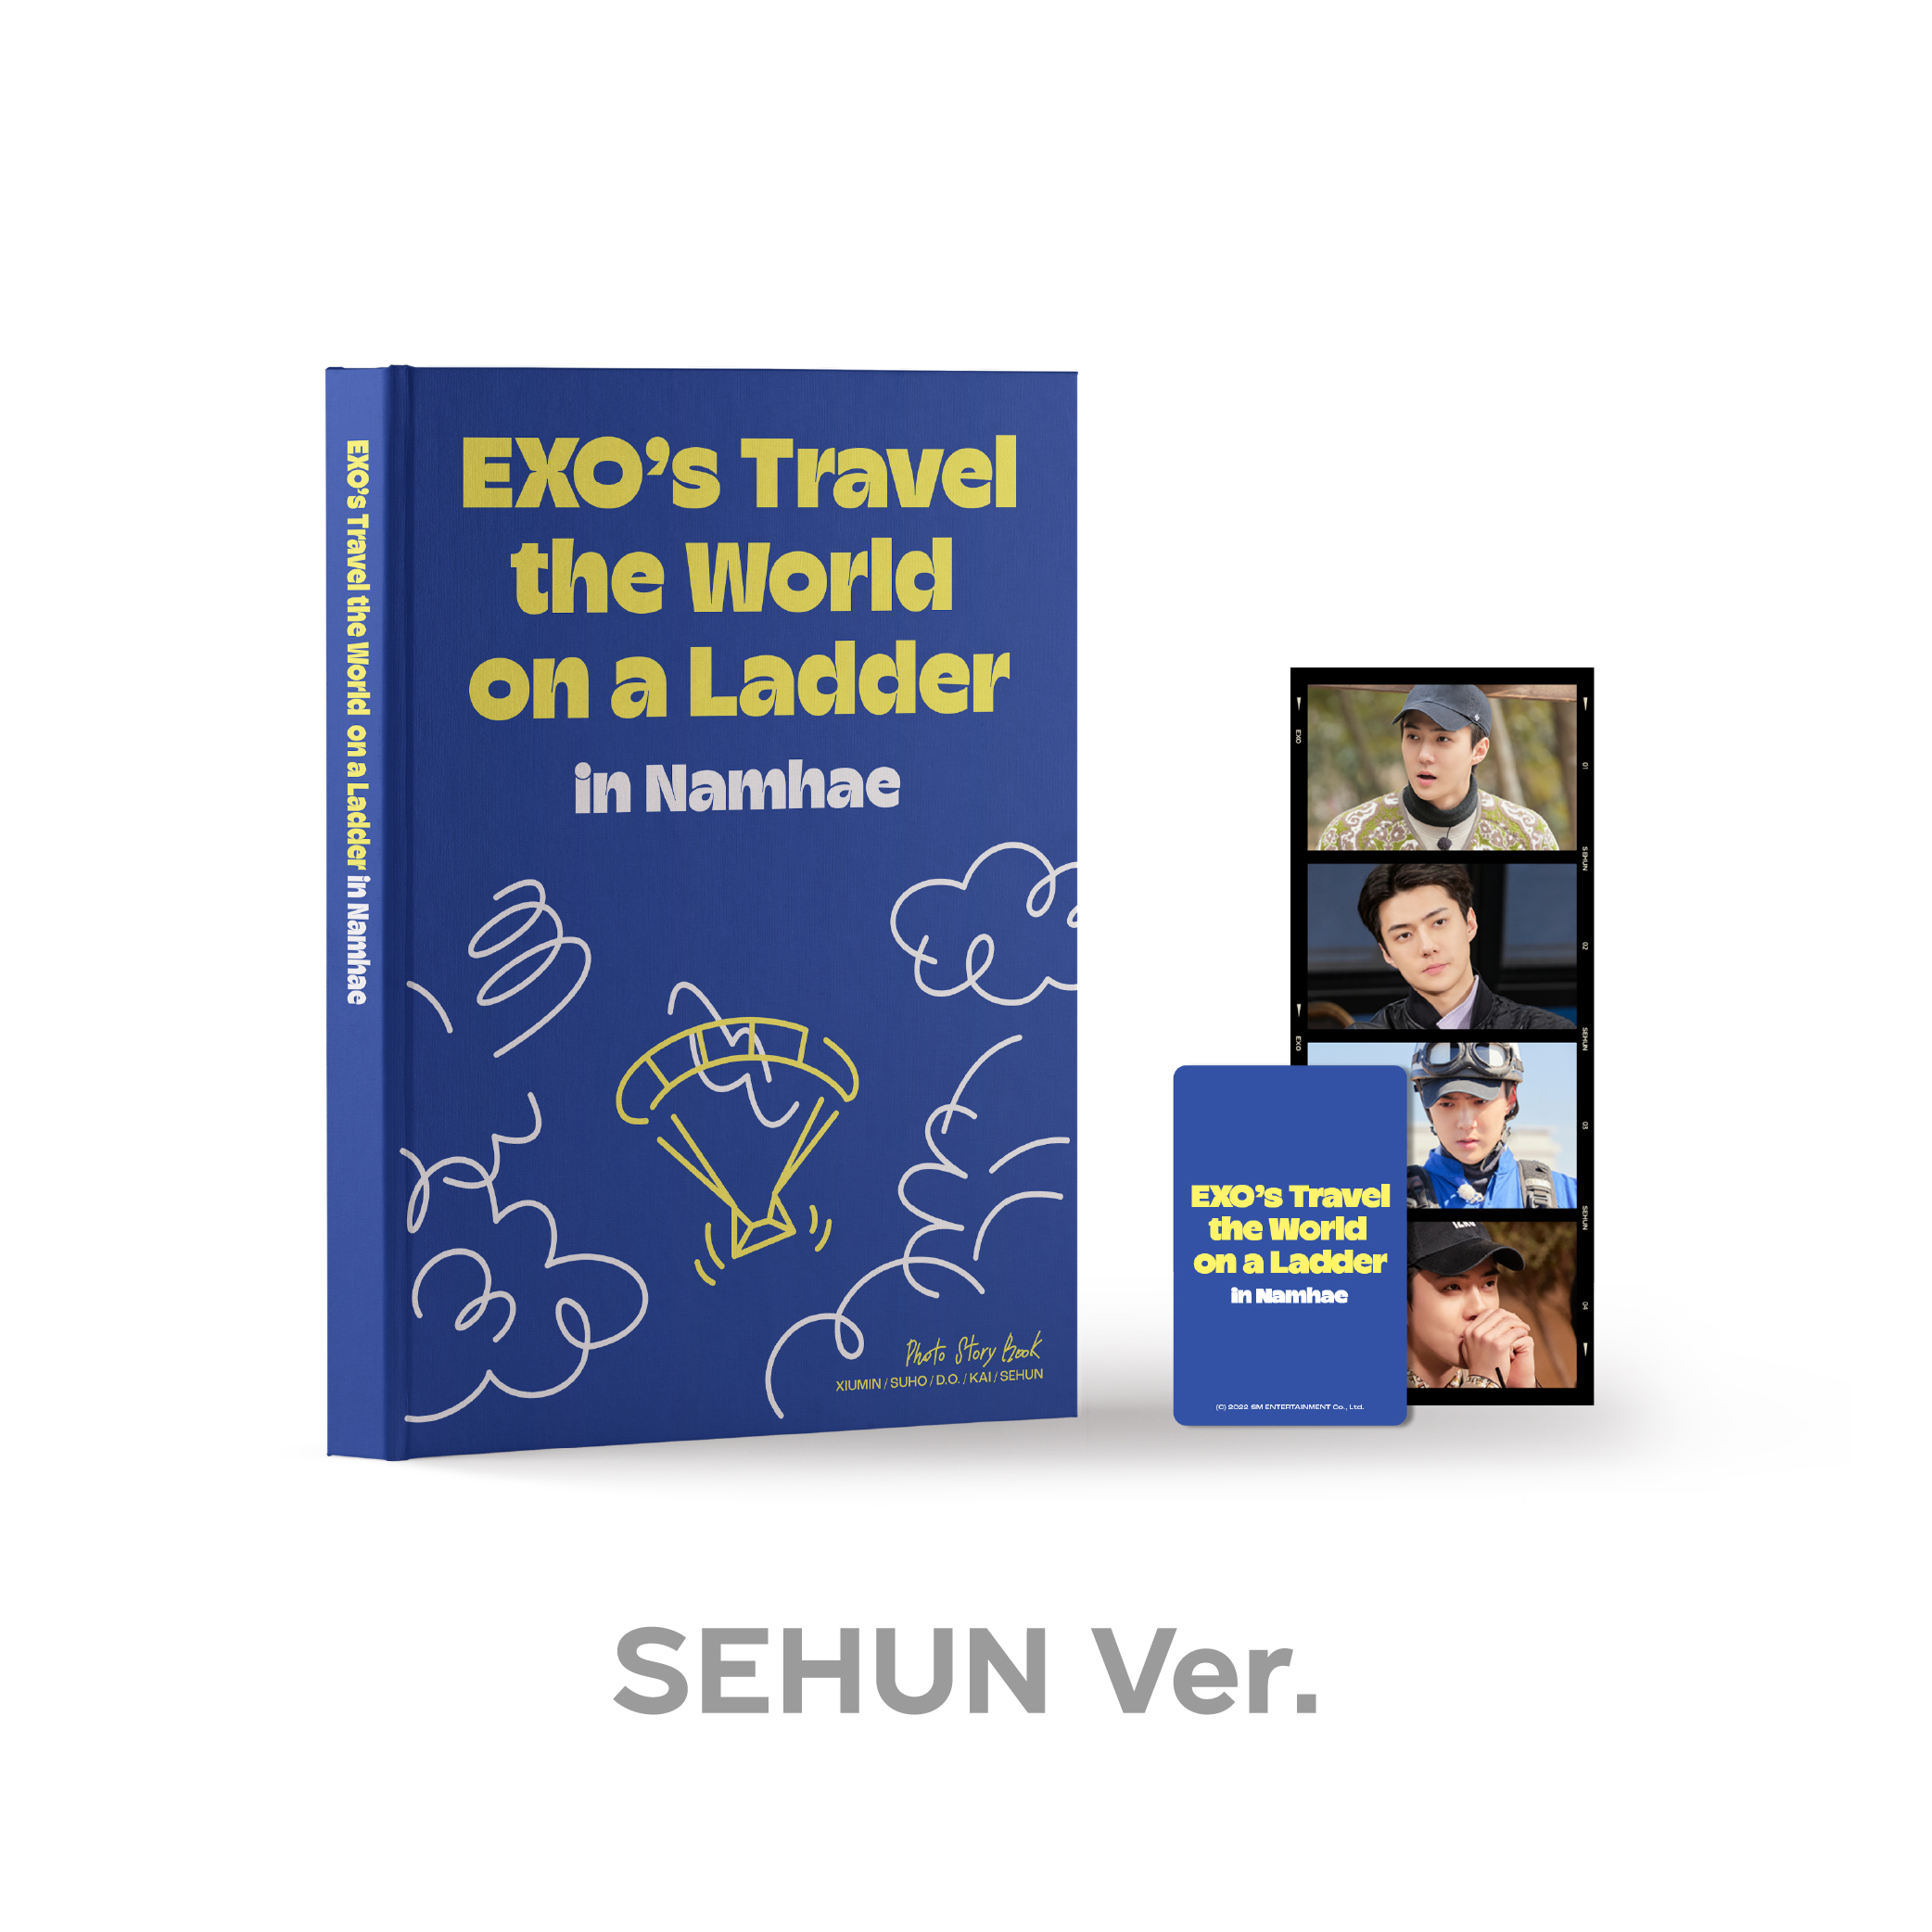 EXO - 엑소의 사다리 타고 세계여행 - 남해 편 PHOTO STORY BOOK [SEHUN Ver.]